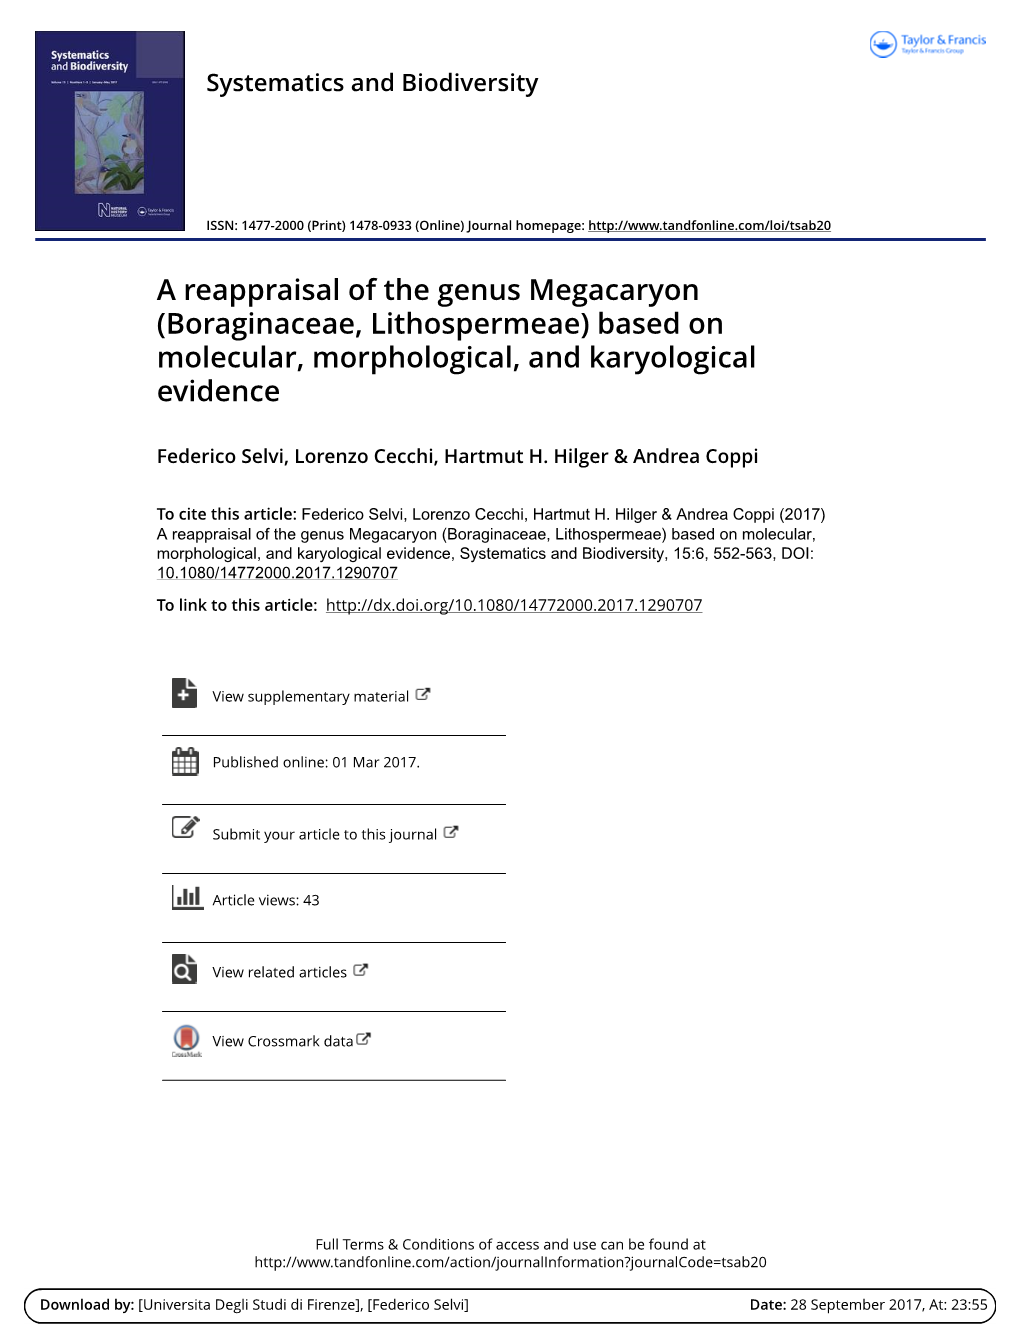 A Reappraisal of the Genus Megacaryon \(Boraginaceae